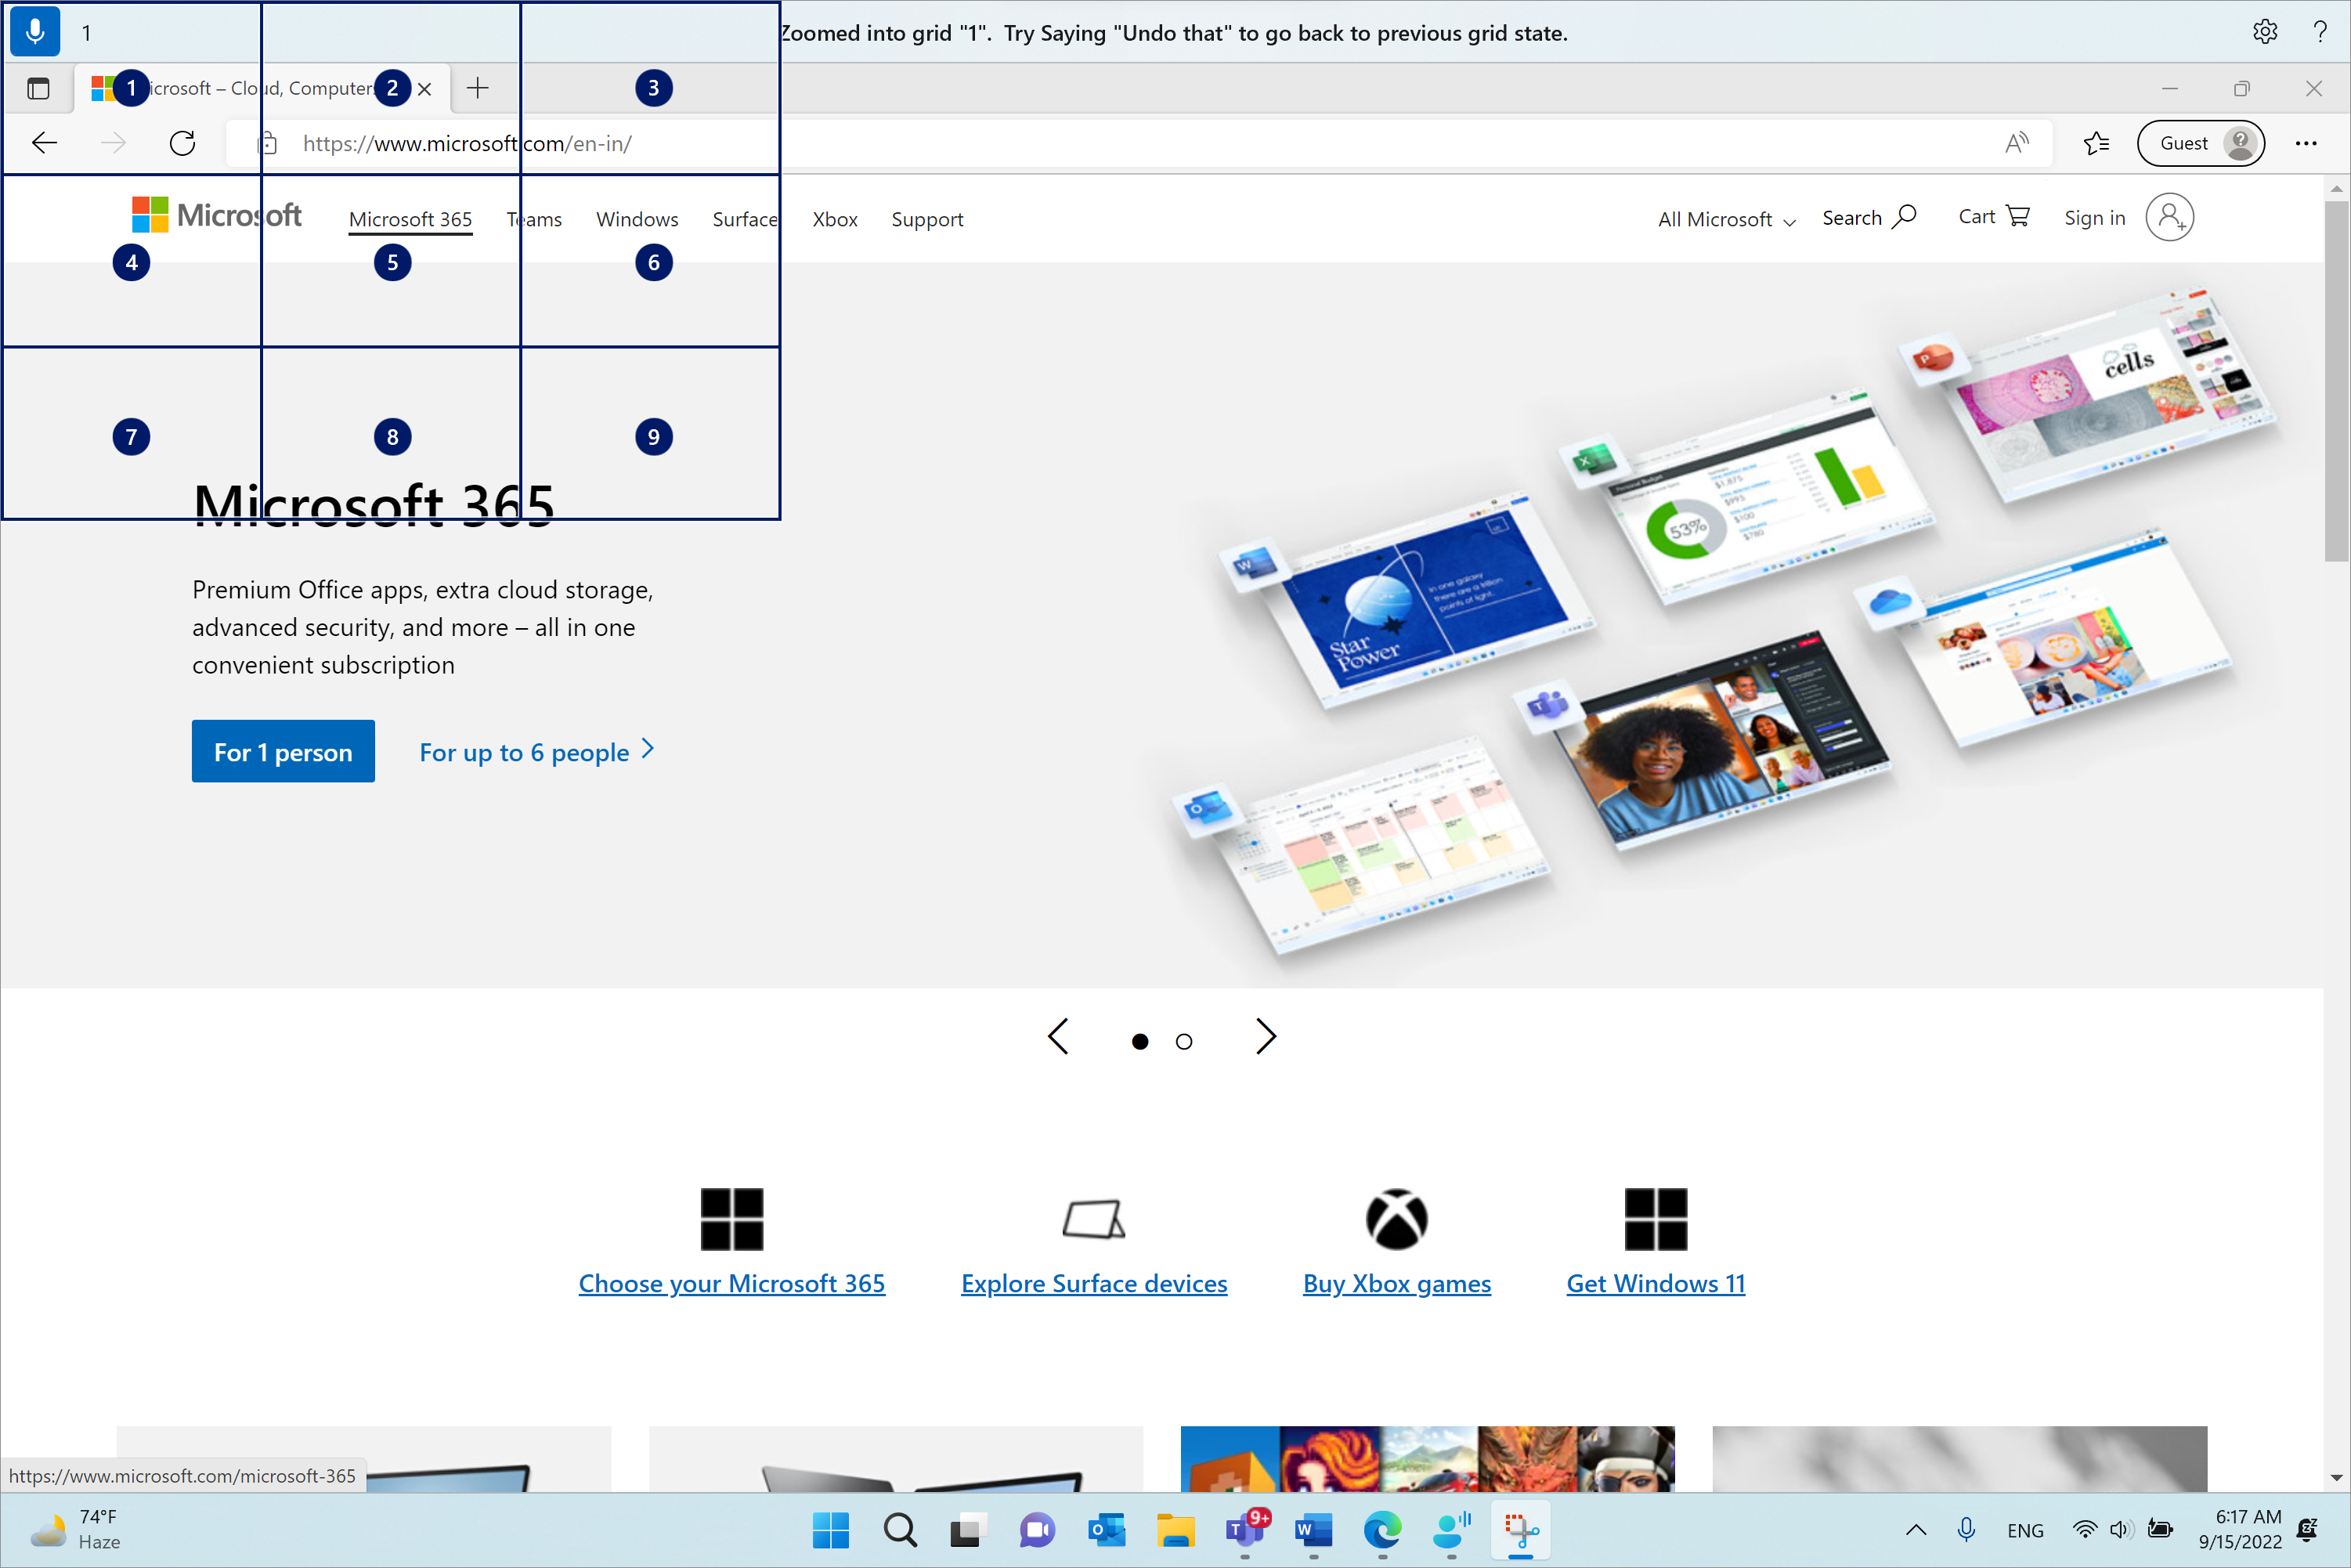 Microsoft Edge är öppet och på sidan Microsoft.com. Röståtkomstfältet är överst och i lyssningsläge. Kommandot som utfärdas är "1" och feedbacken som visas är "Inzoomad i rutnätet "1". Prova att säga "ångra det" för att återgå till föregående rutnätstillstånd.